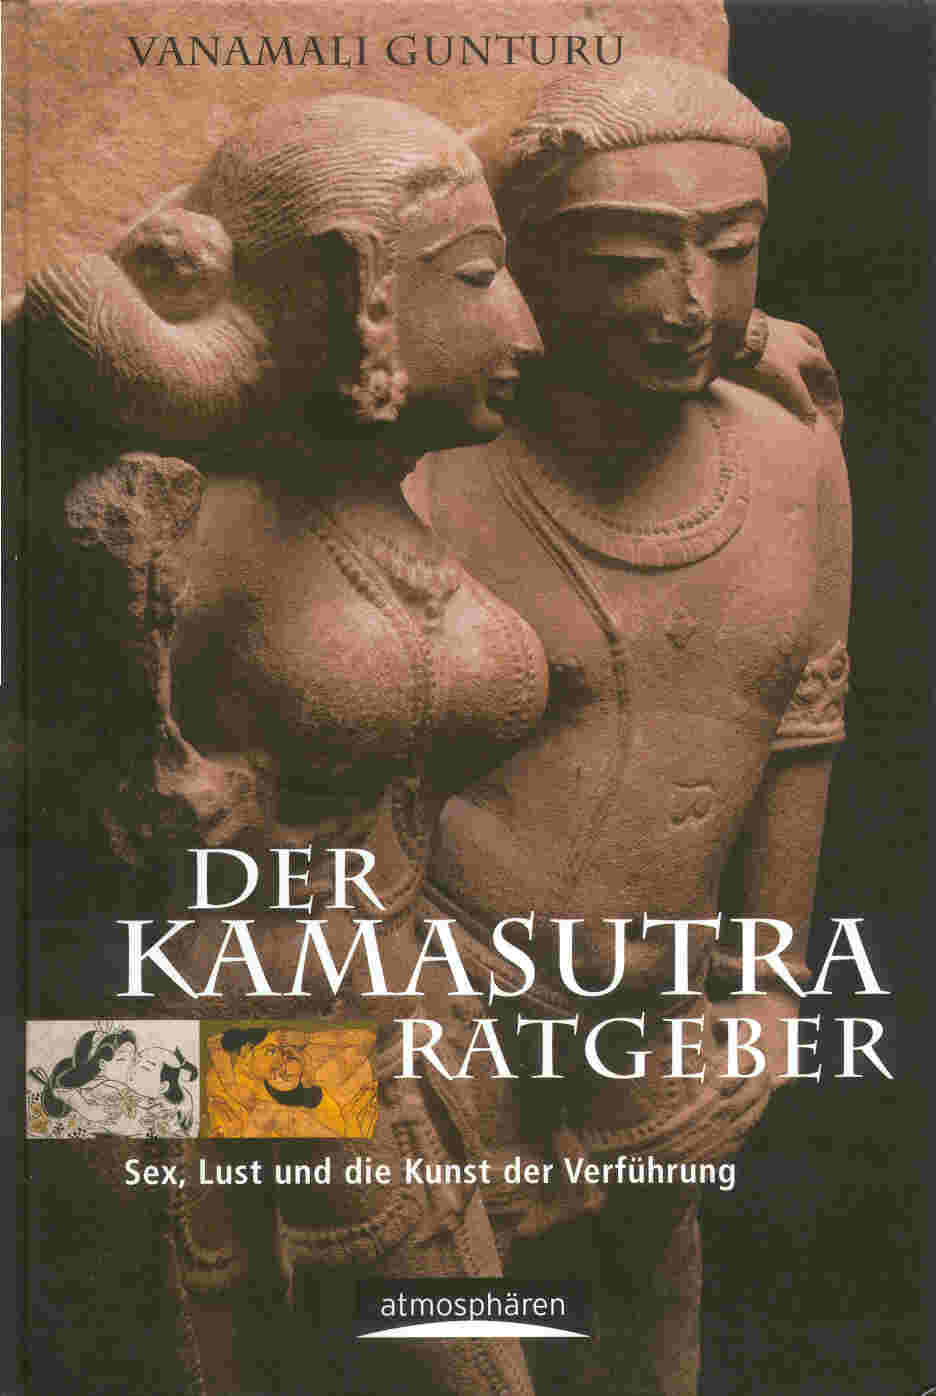 Kamasutra, für die Rückseite das Bild klicken